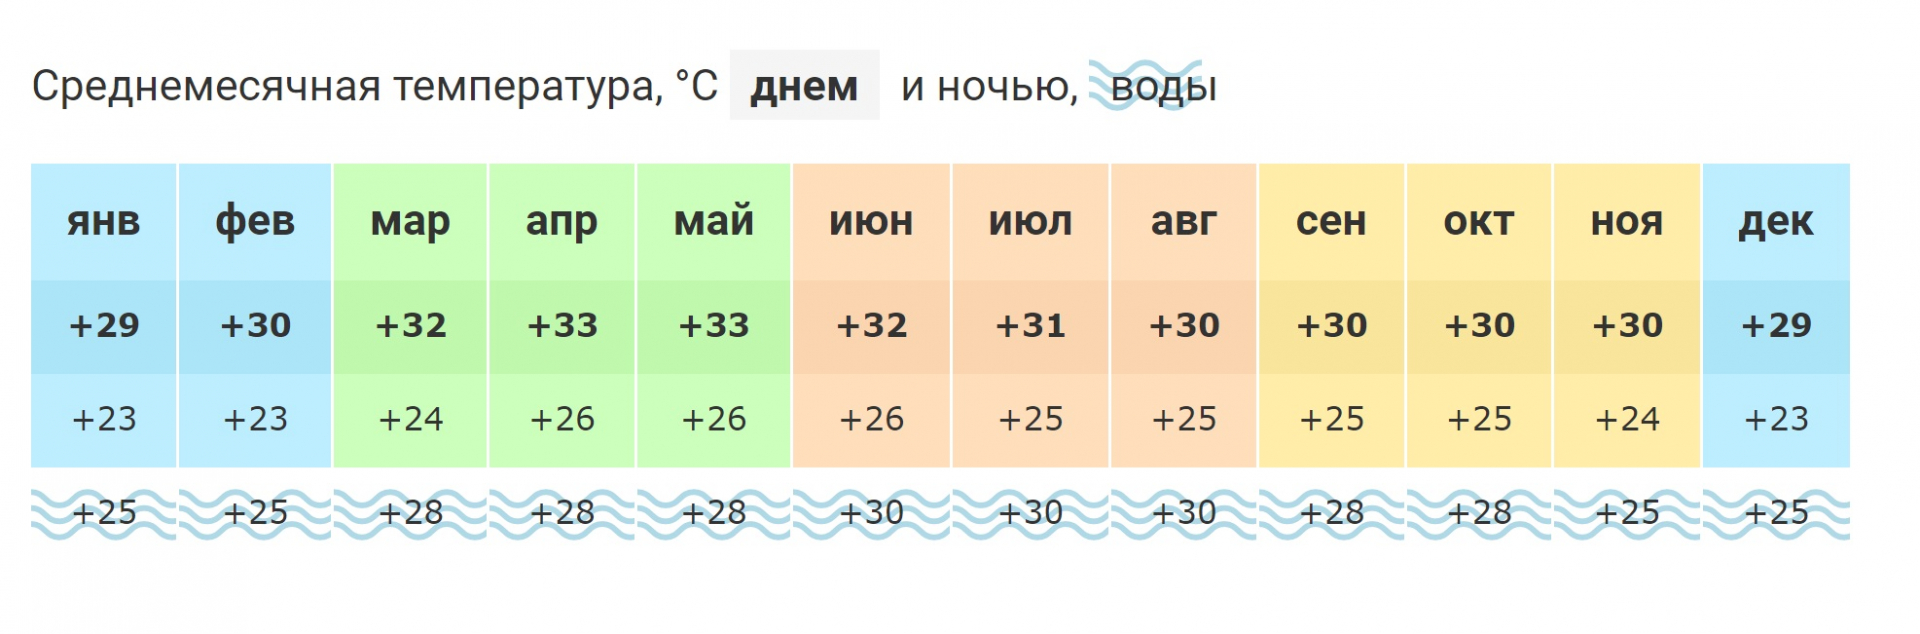 Апрель египет температура воды и воздуха. Аланья климат по месяцам. Климат Анталии по месяцам. Средняя температура в Хургаде по месяцам. Аланья температура по месяцам.